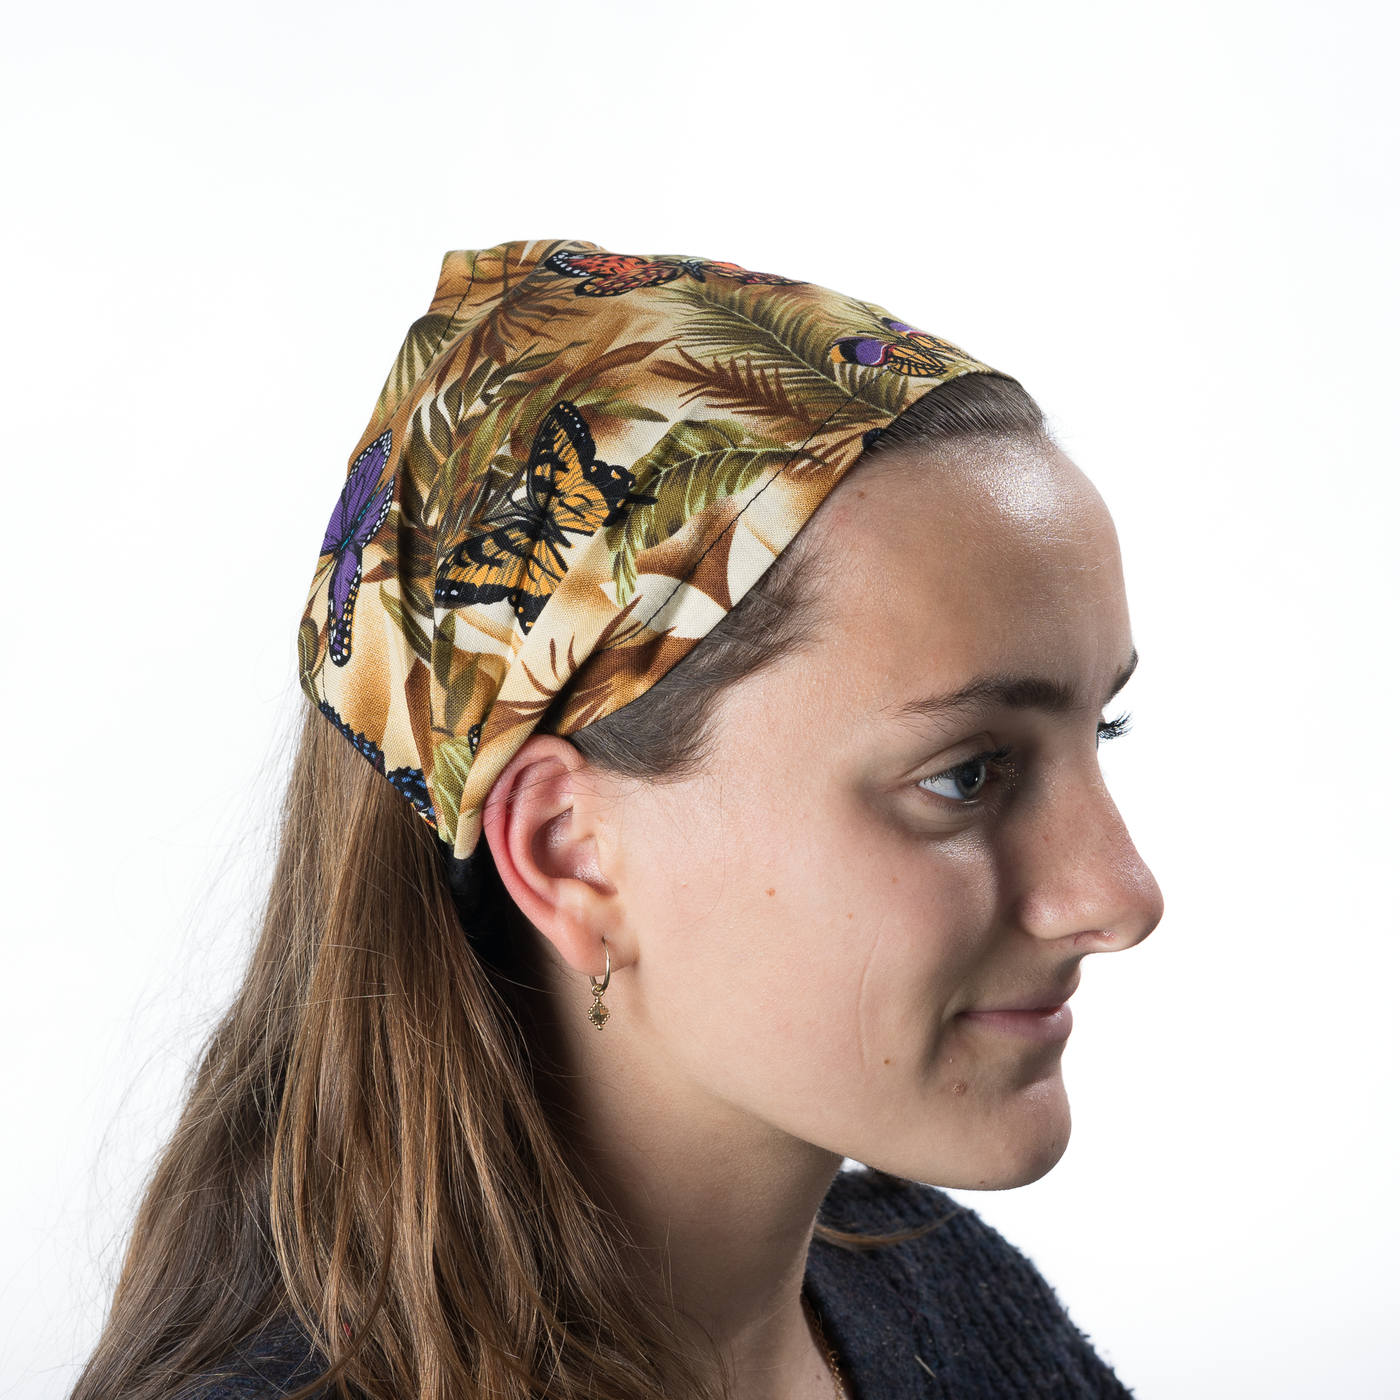 Pretty Butterflies & Ferns Headband ~ Handmade from 100% cotton